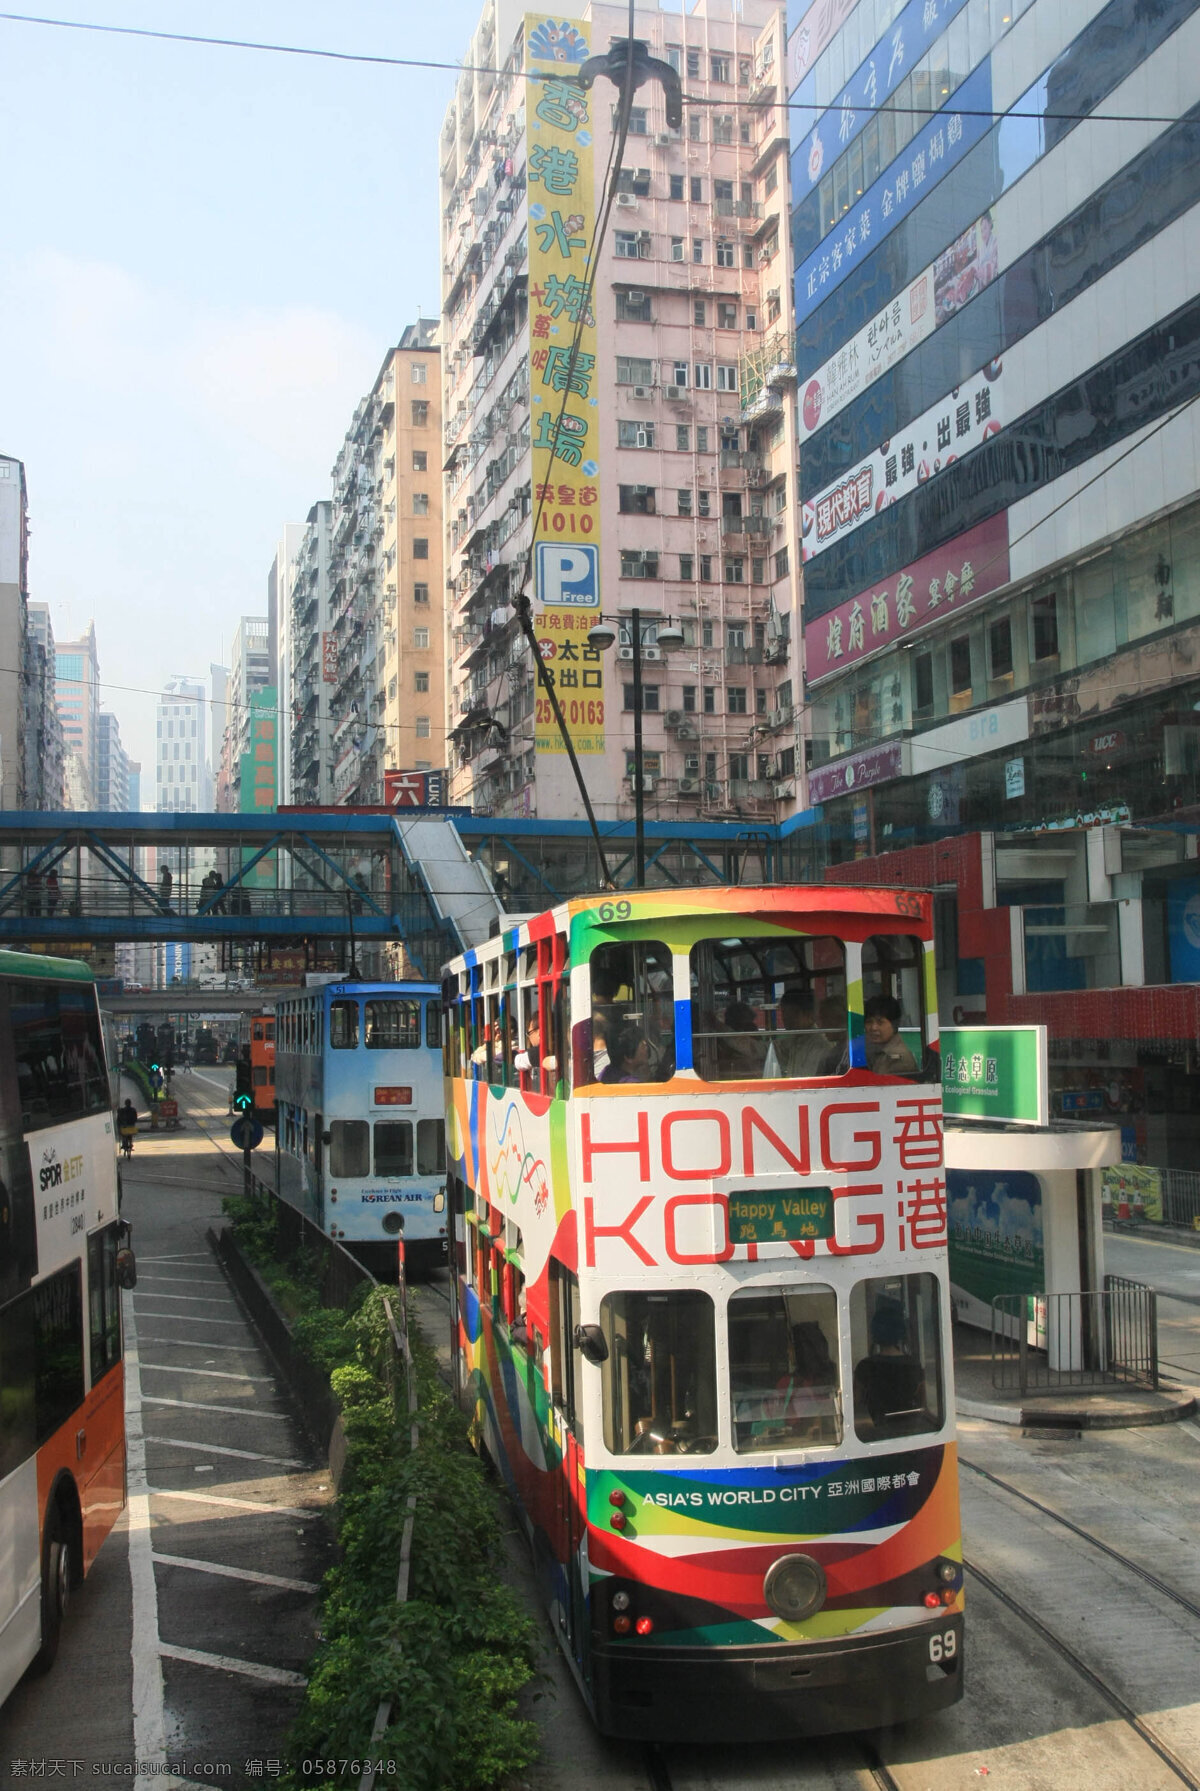 香港双层巴士 香港 双层巴士 公交车 双层 电车 国内旅游 旅游摄影